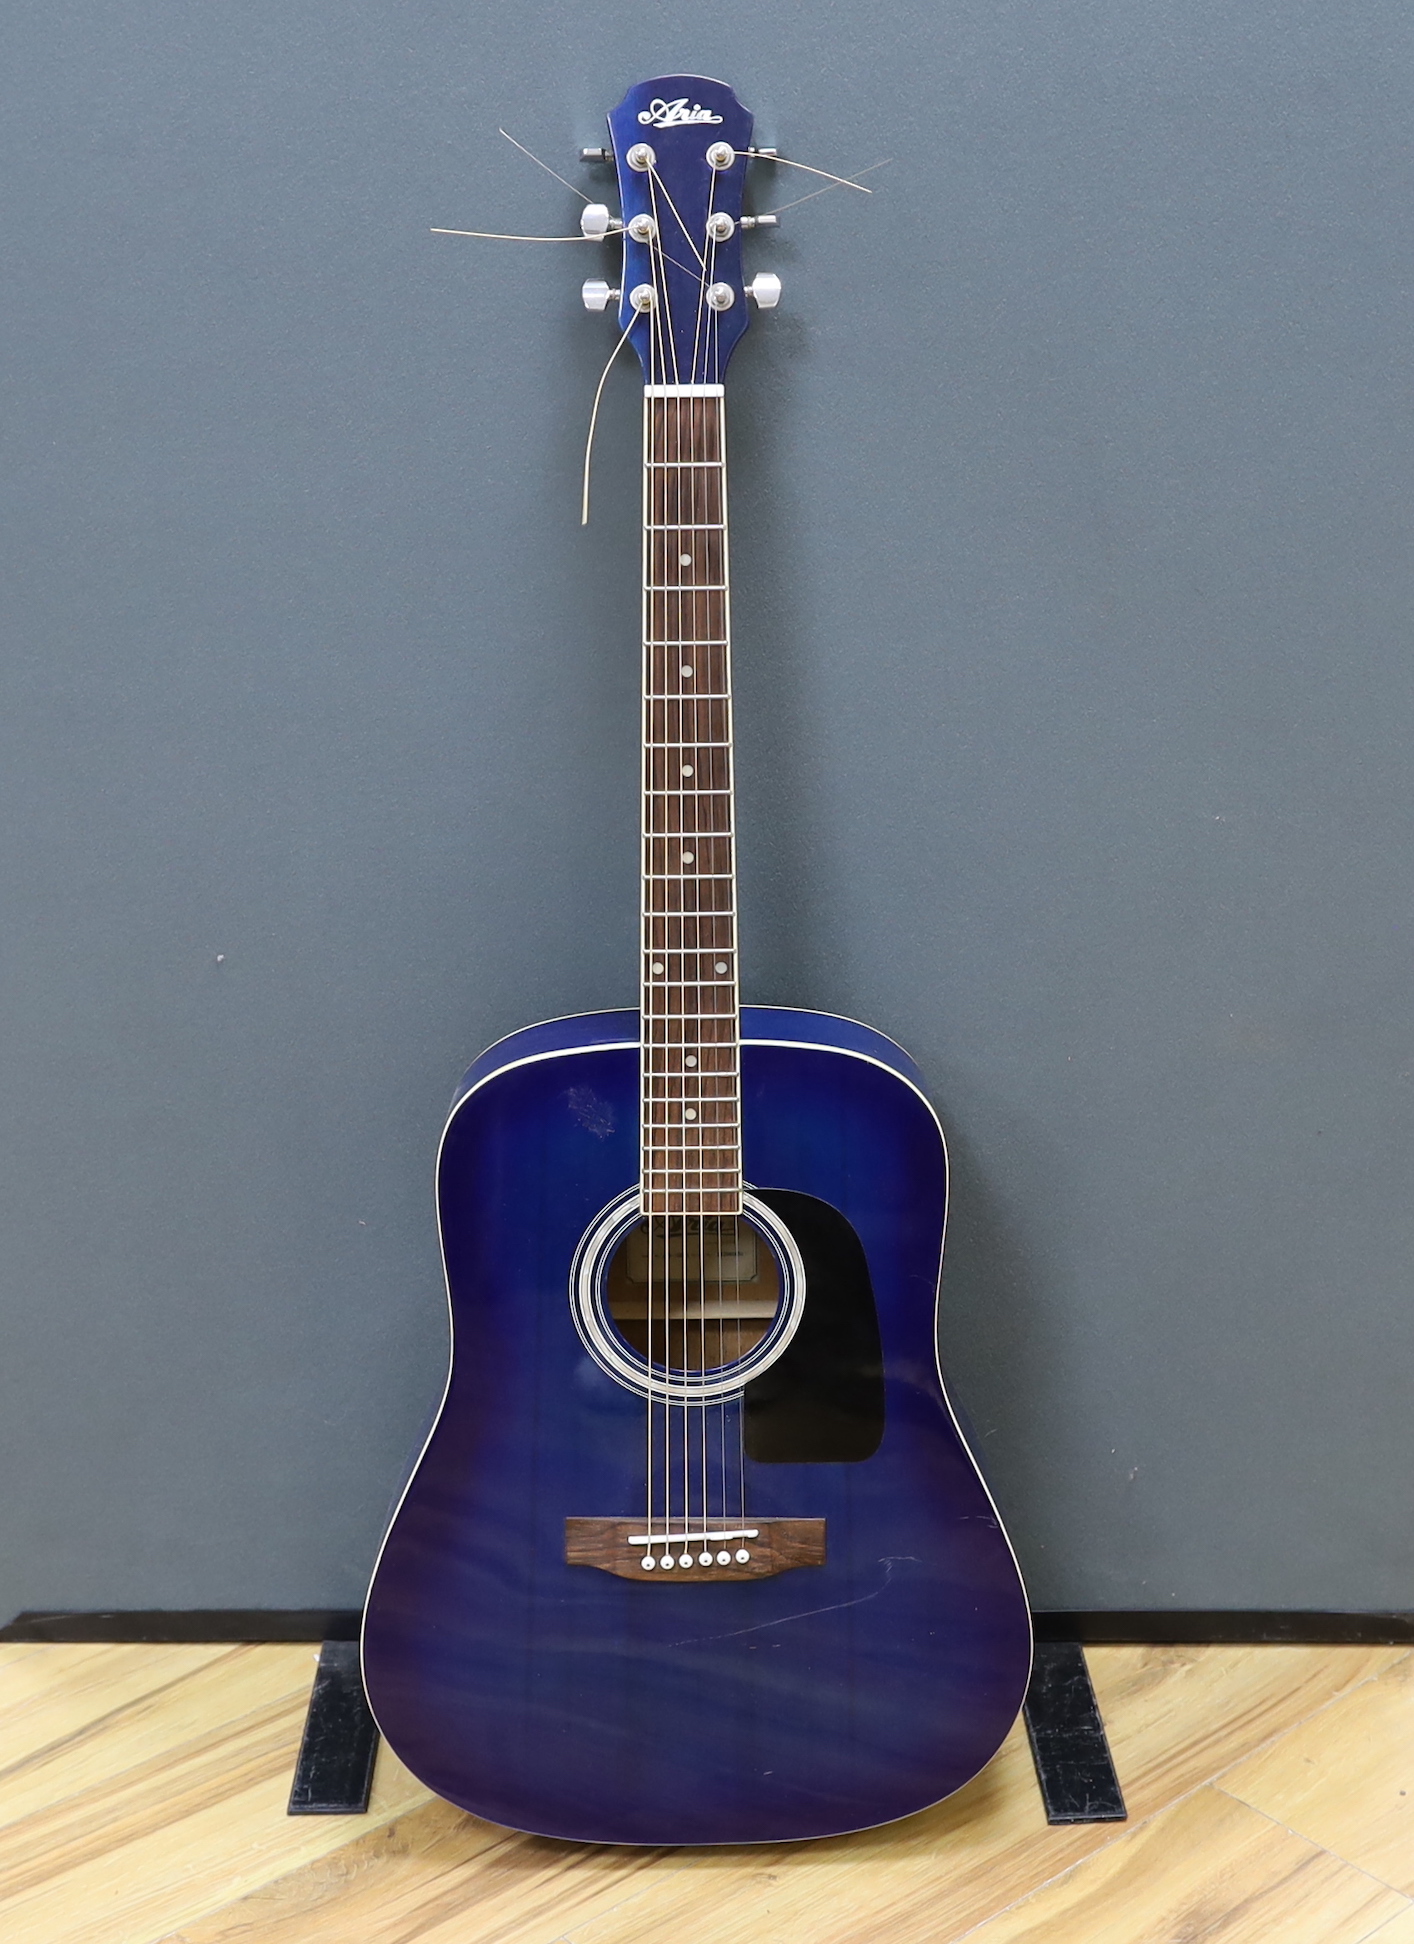 An Aria acoustic guitar, model no.AWN-15BLS